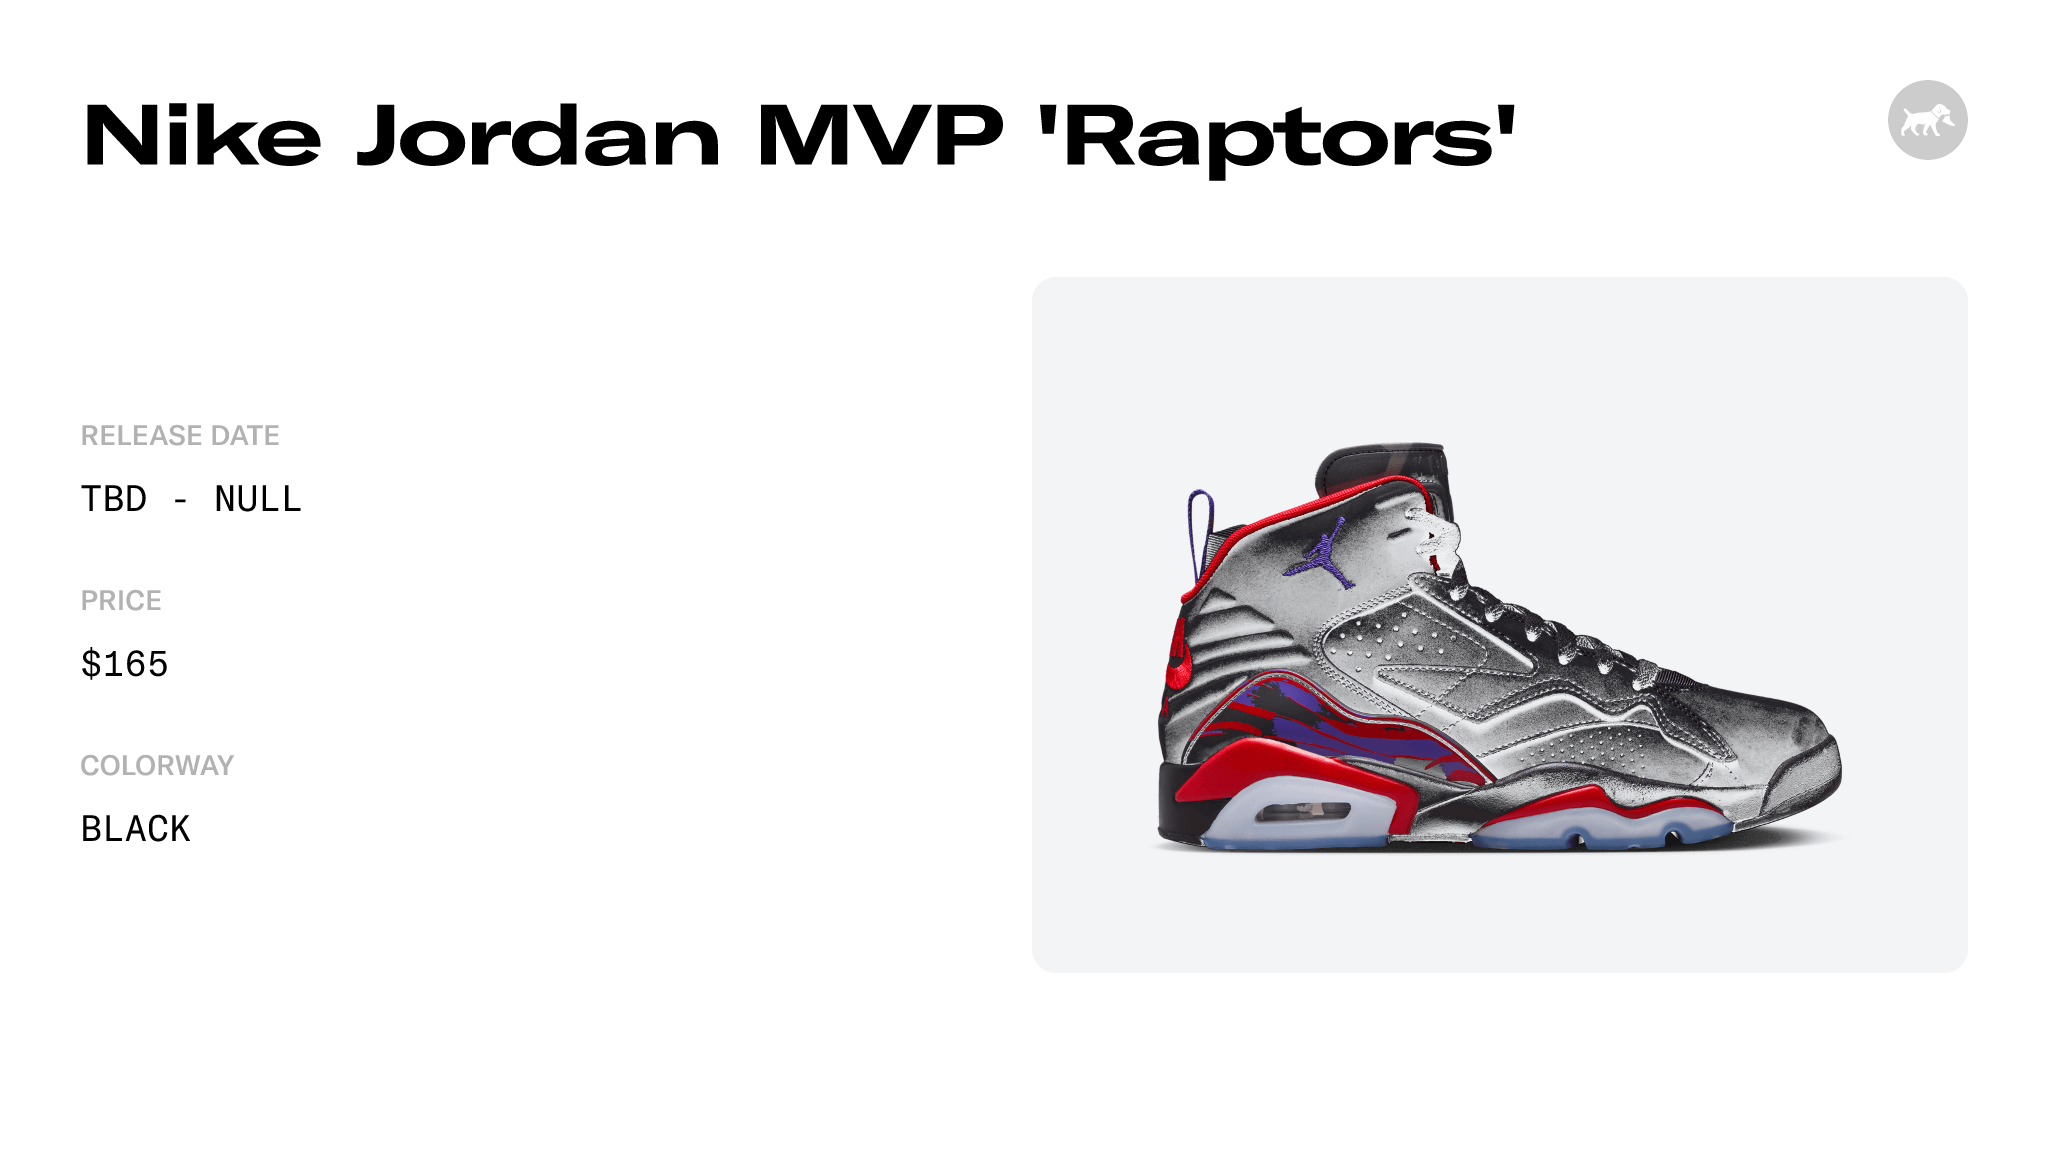 Nike Jordan MVP 'Raptors' - DZ4475-006 Raffles and Release Date